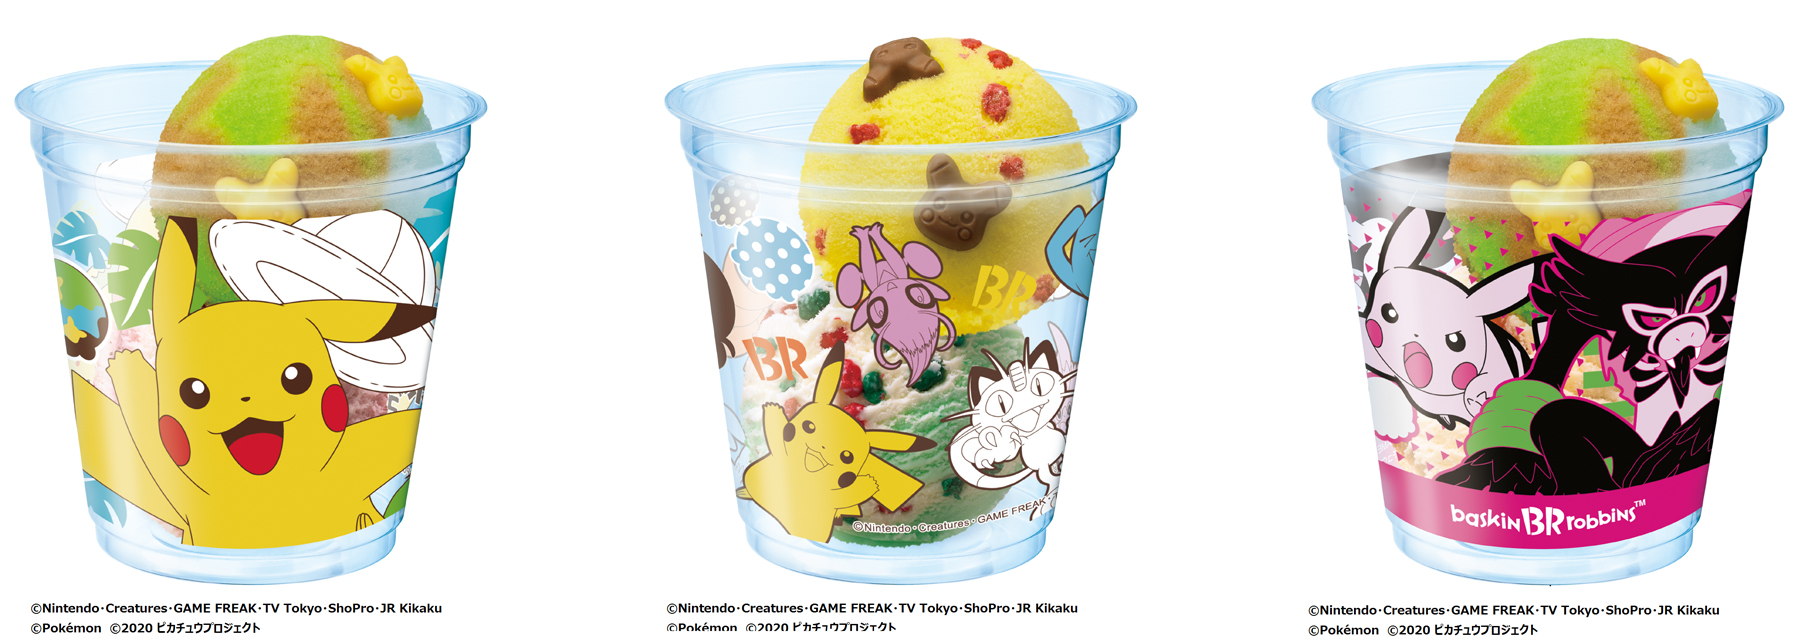 「ポケモン ダブルカップ」のデザインは3種類。スモールダブル490円、レギュラーダブル710円（税込）